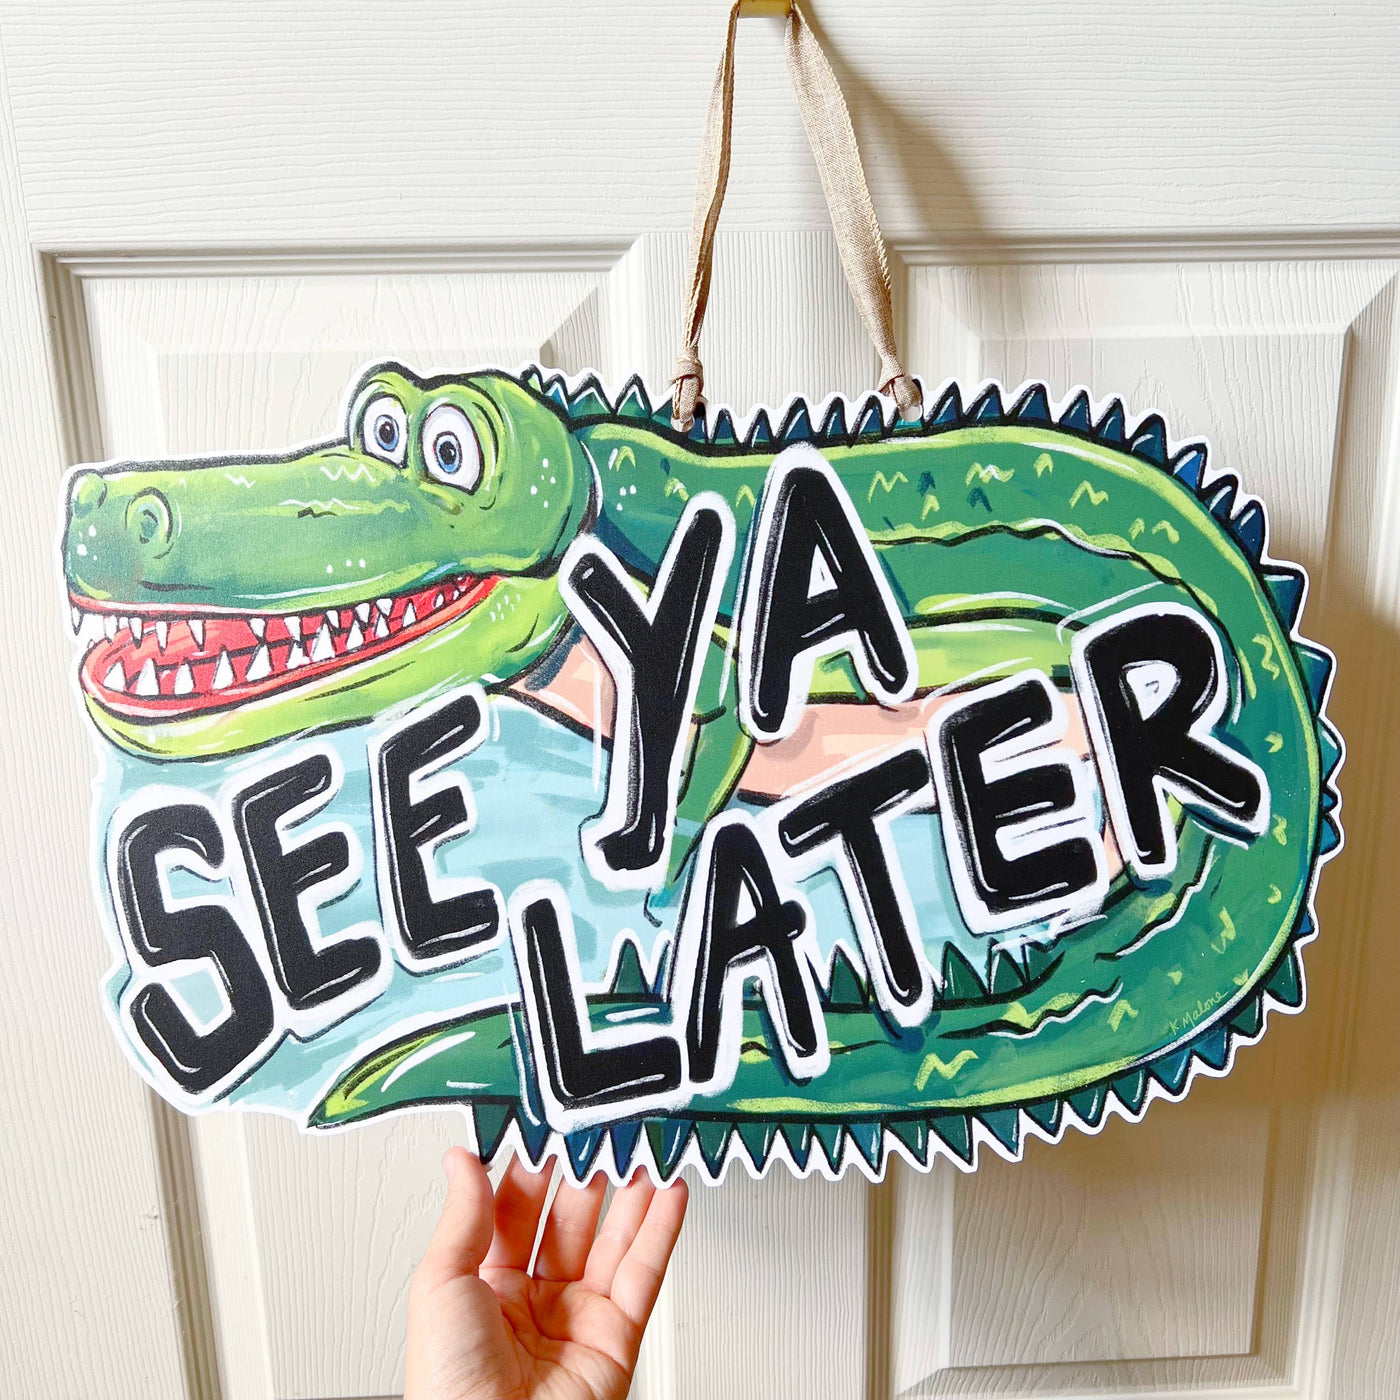 Home Malone - See Ya Later Alligator Door Hanger - Louisiana Cajun Decor